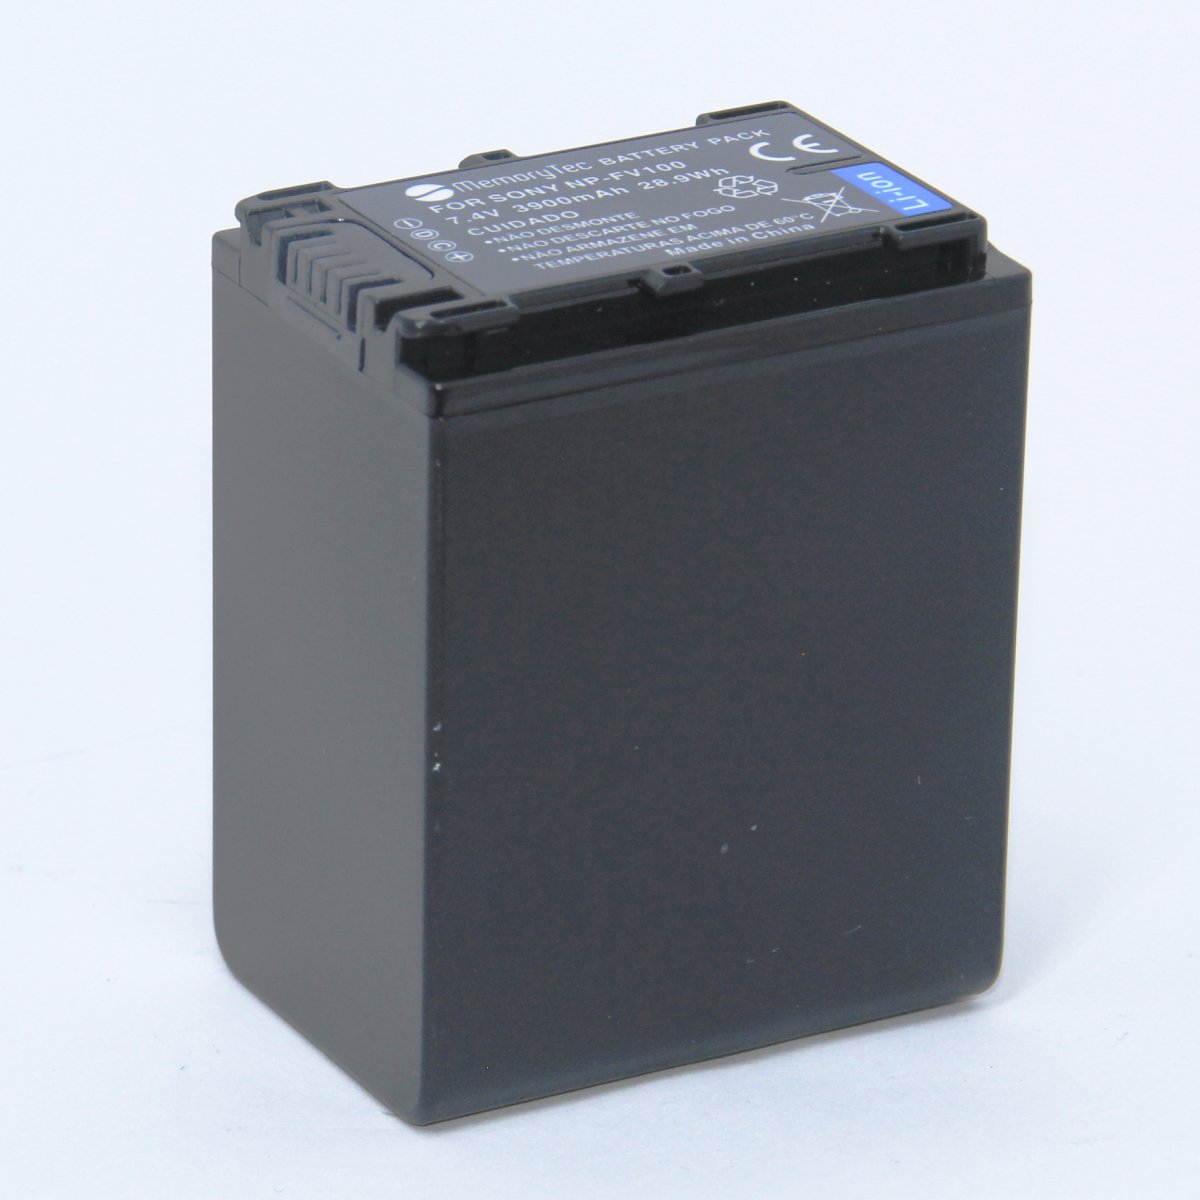 Bateria NP-FV100 para câmera digital e filmadora Sony HDR-XR160E, HDR-PJ50VE, DCR-SR77E, DCR-HC85E